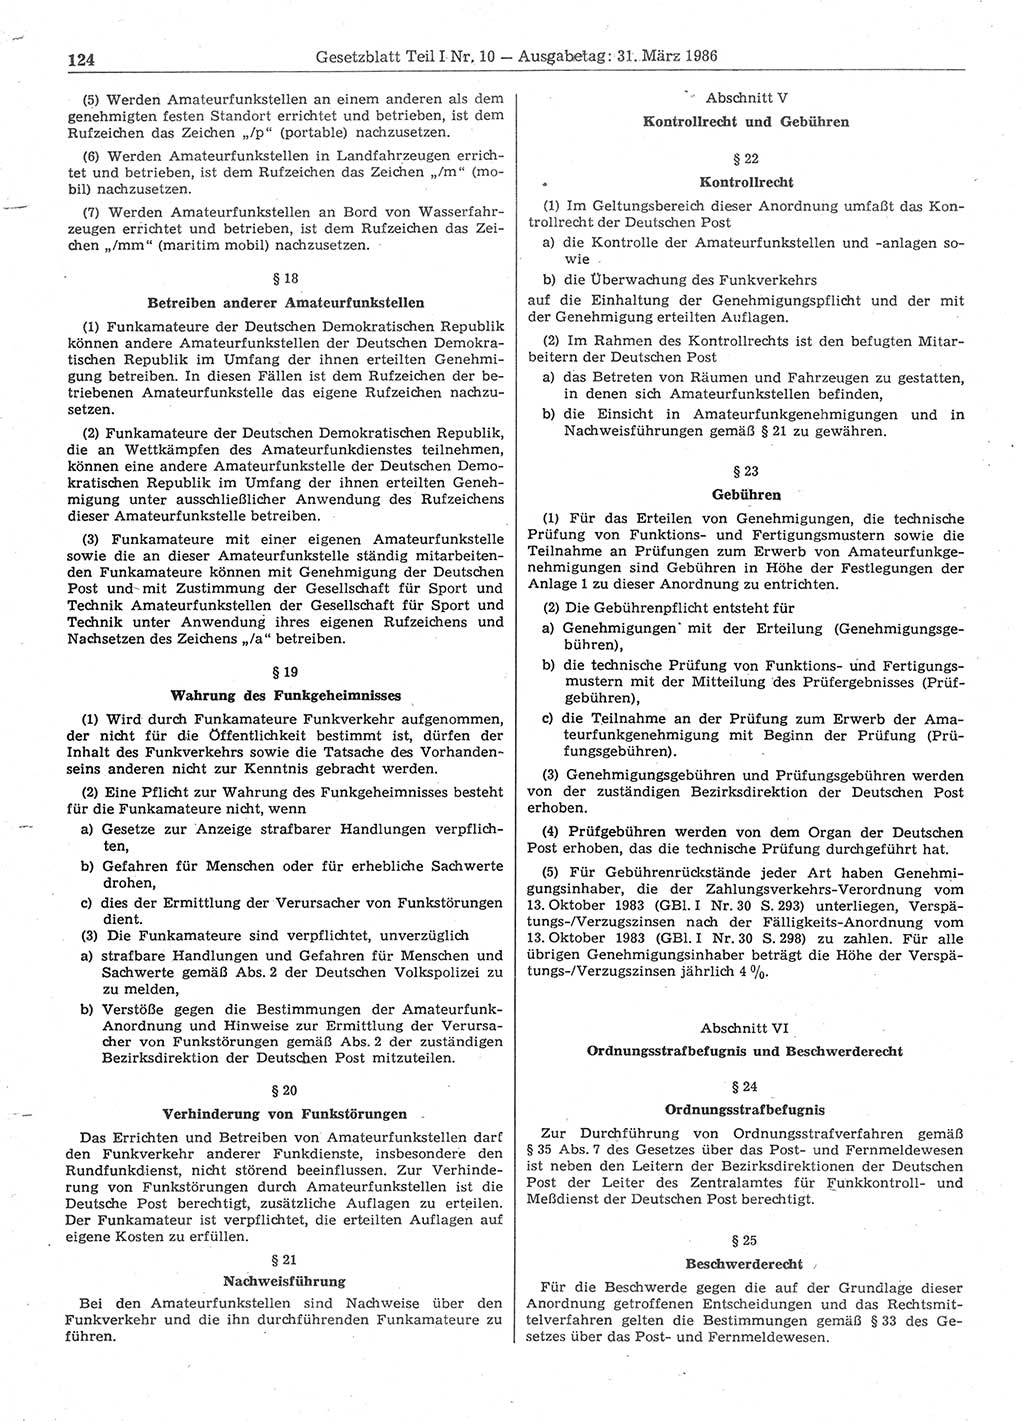 Gesetzblatt (GBl.) der Deutschen Demokratischen Republik (DDR) Teil Ⅰ 1986, Seite 124 (GBl. DDR Ⅰ 1986, S. 124)